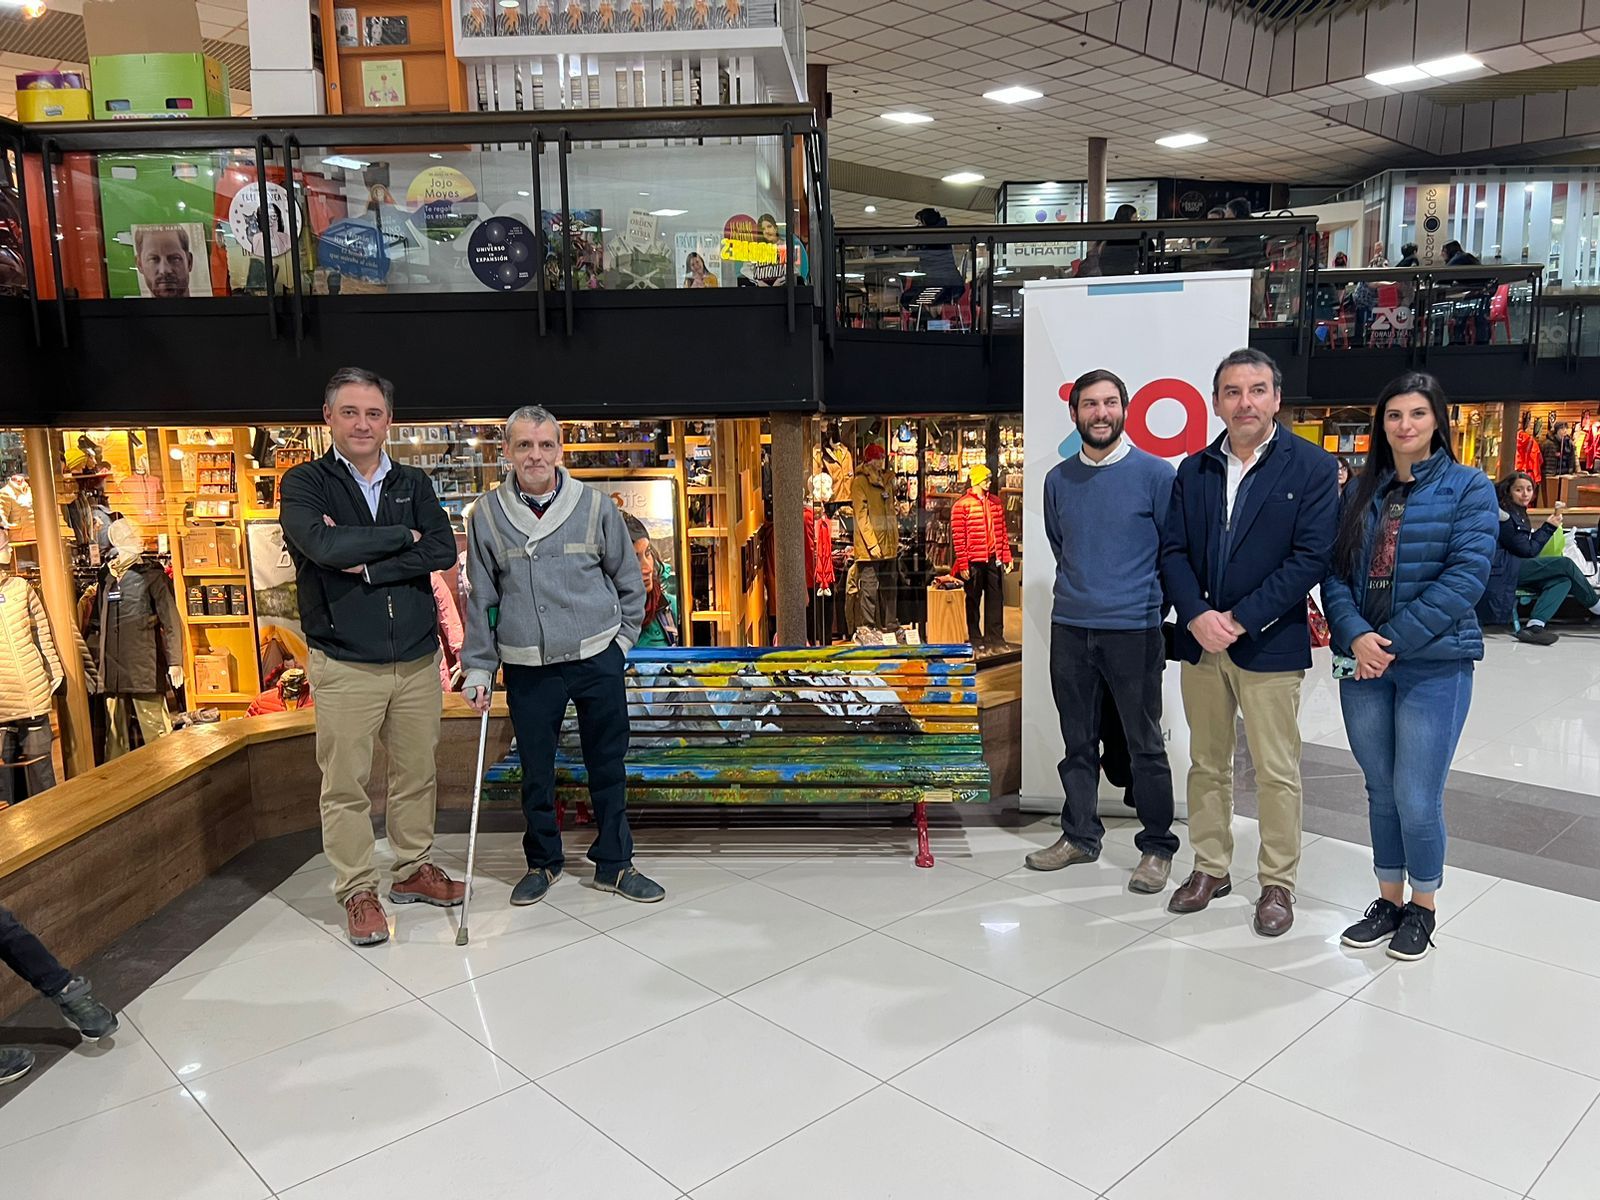 Zona Franca de Punta Arenas y Seremi de Culturas inauguran intervención plástica en el espacio comercial